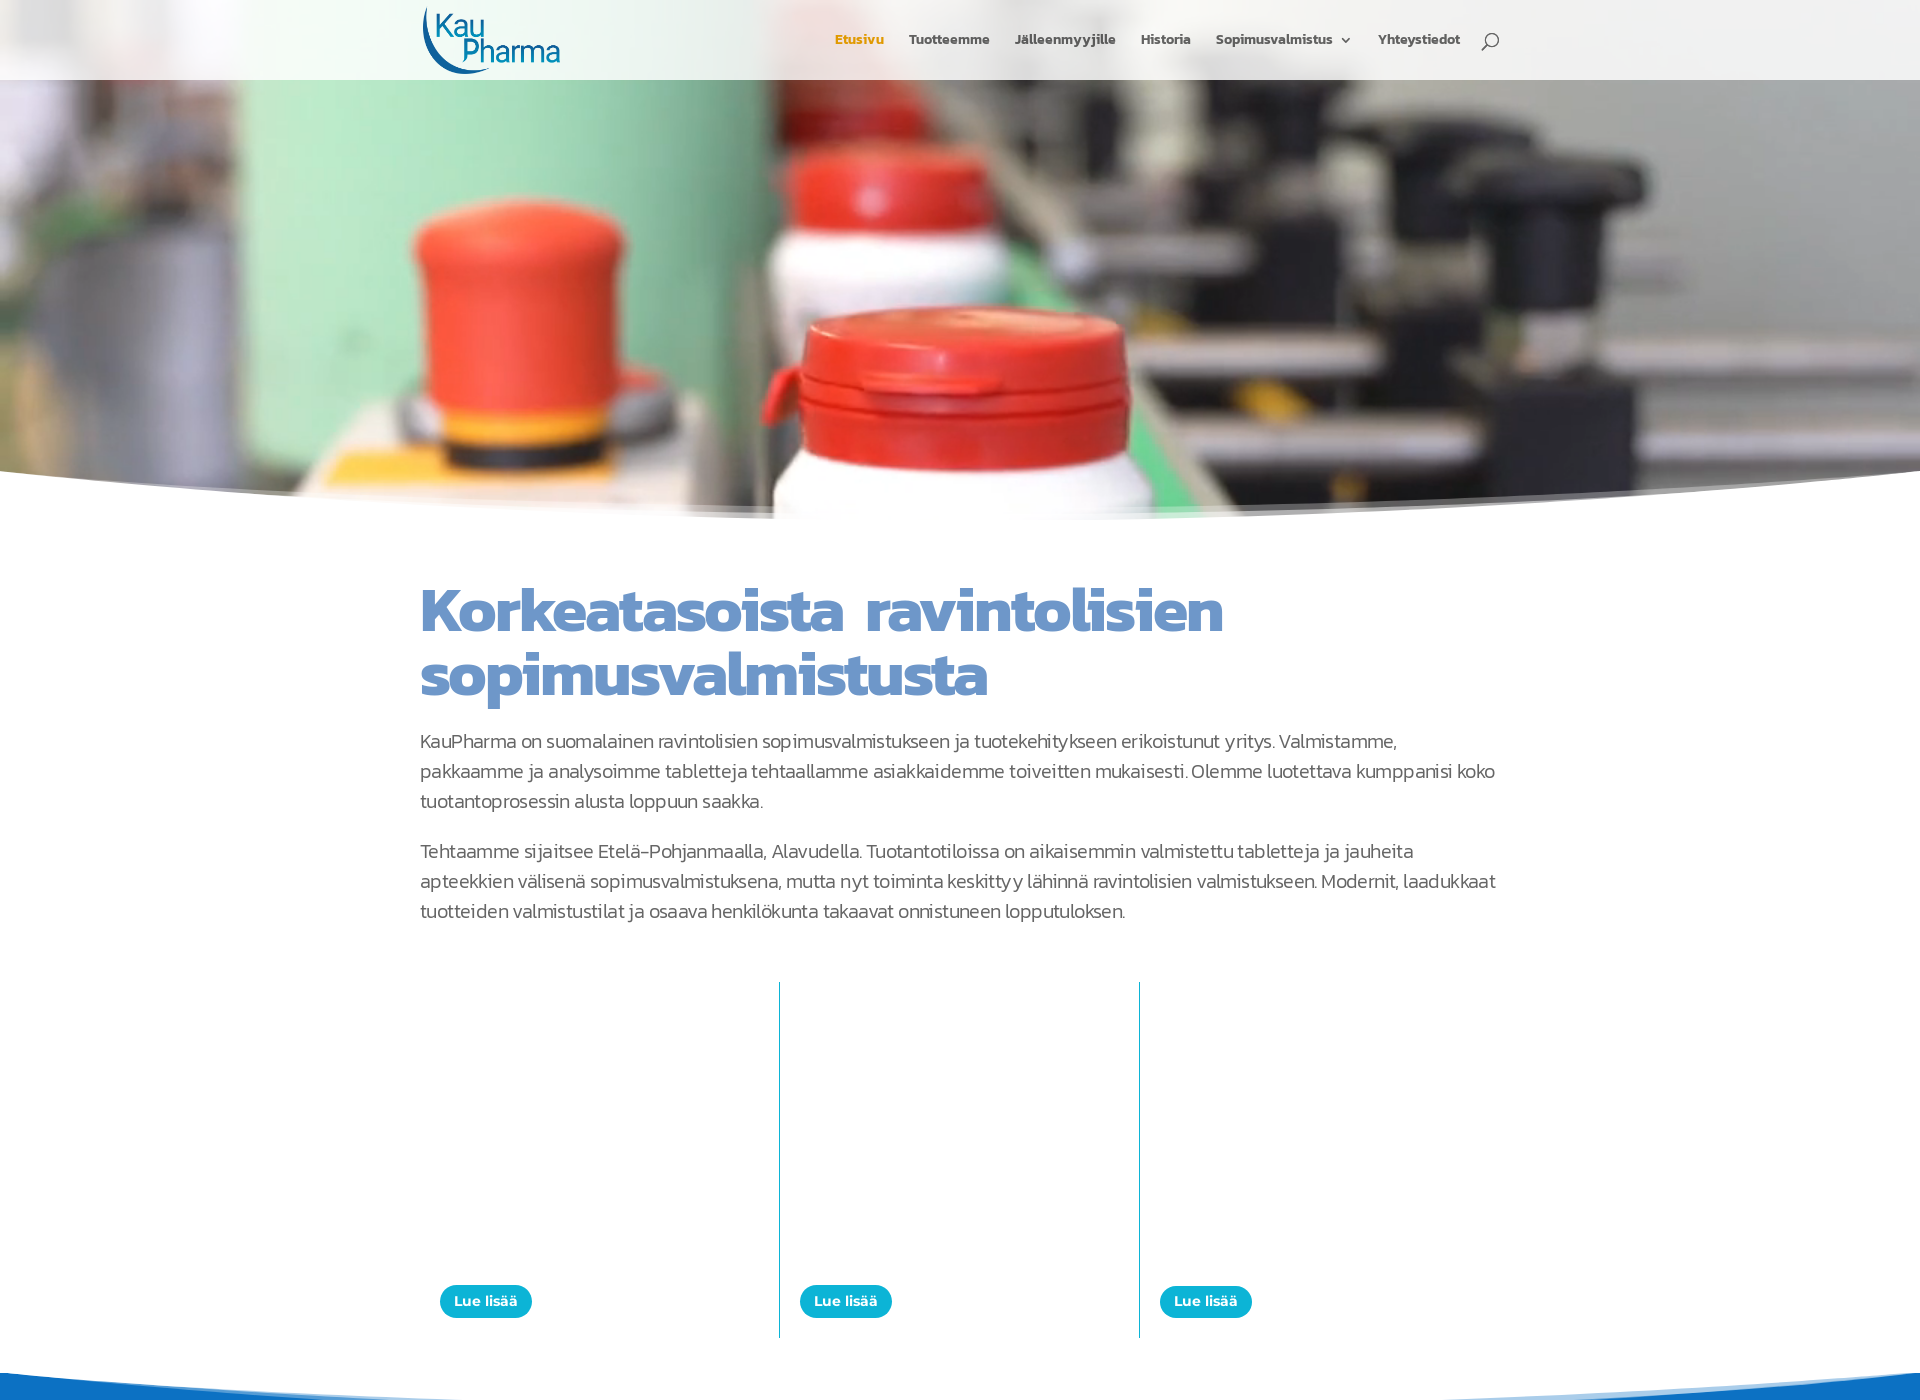 Skärmdump för kaupharma.fi